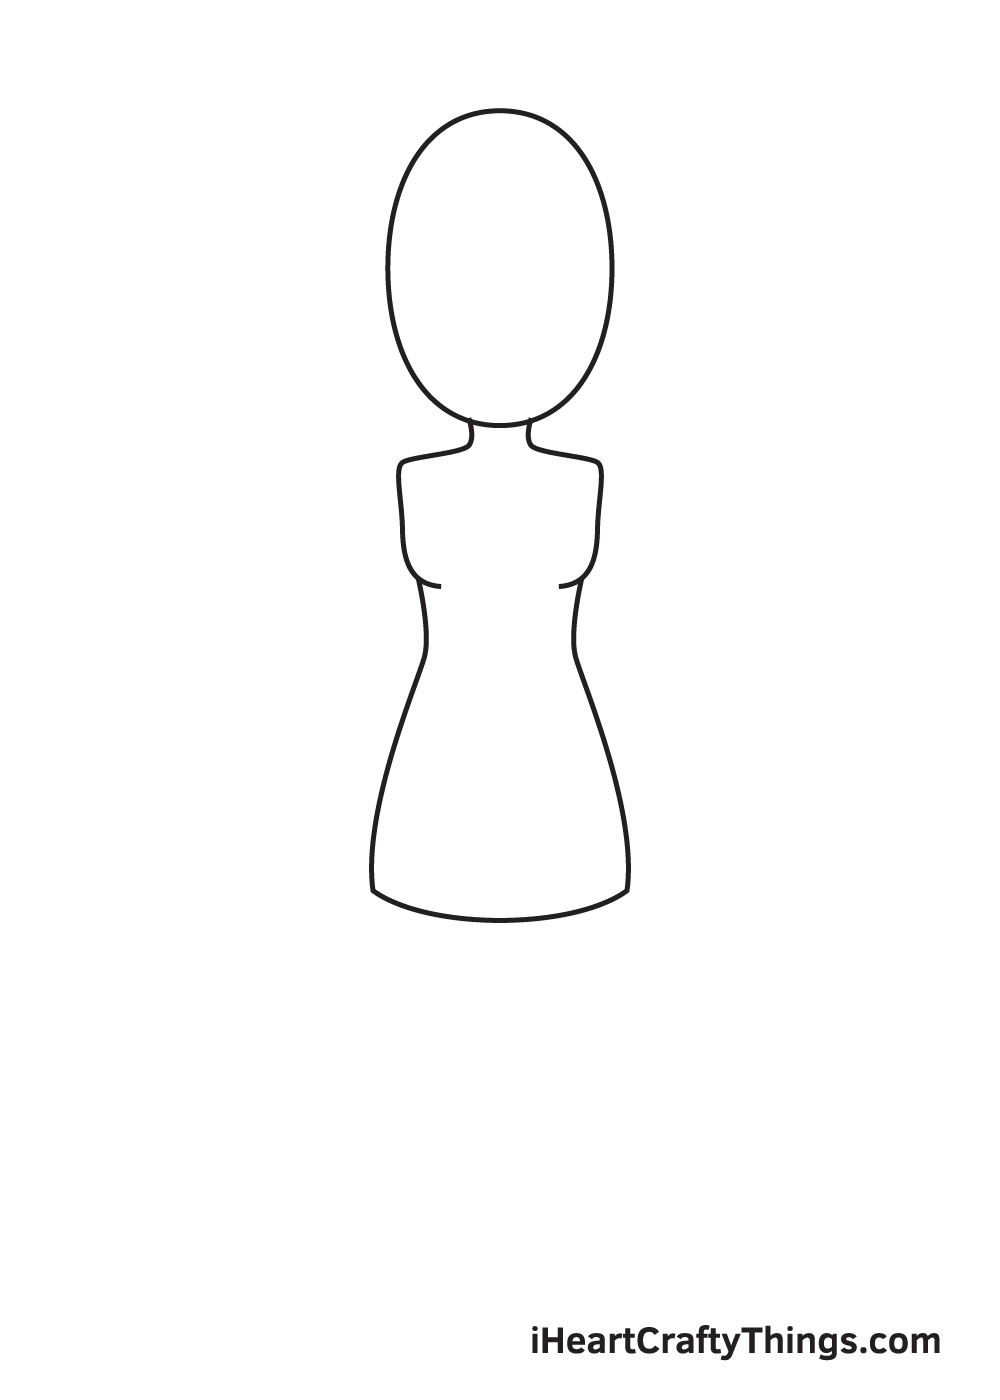 Woman DRAWING – STEP 3 - Hướng dẫn chi tiết cách vẽ cô gái đơn giản với 9 bước cơ bản